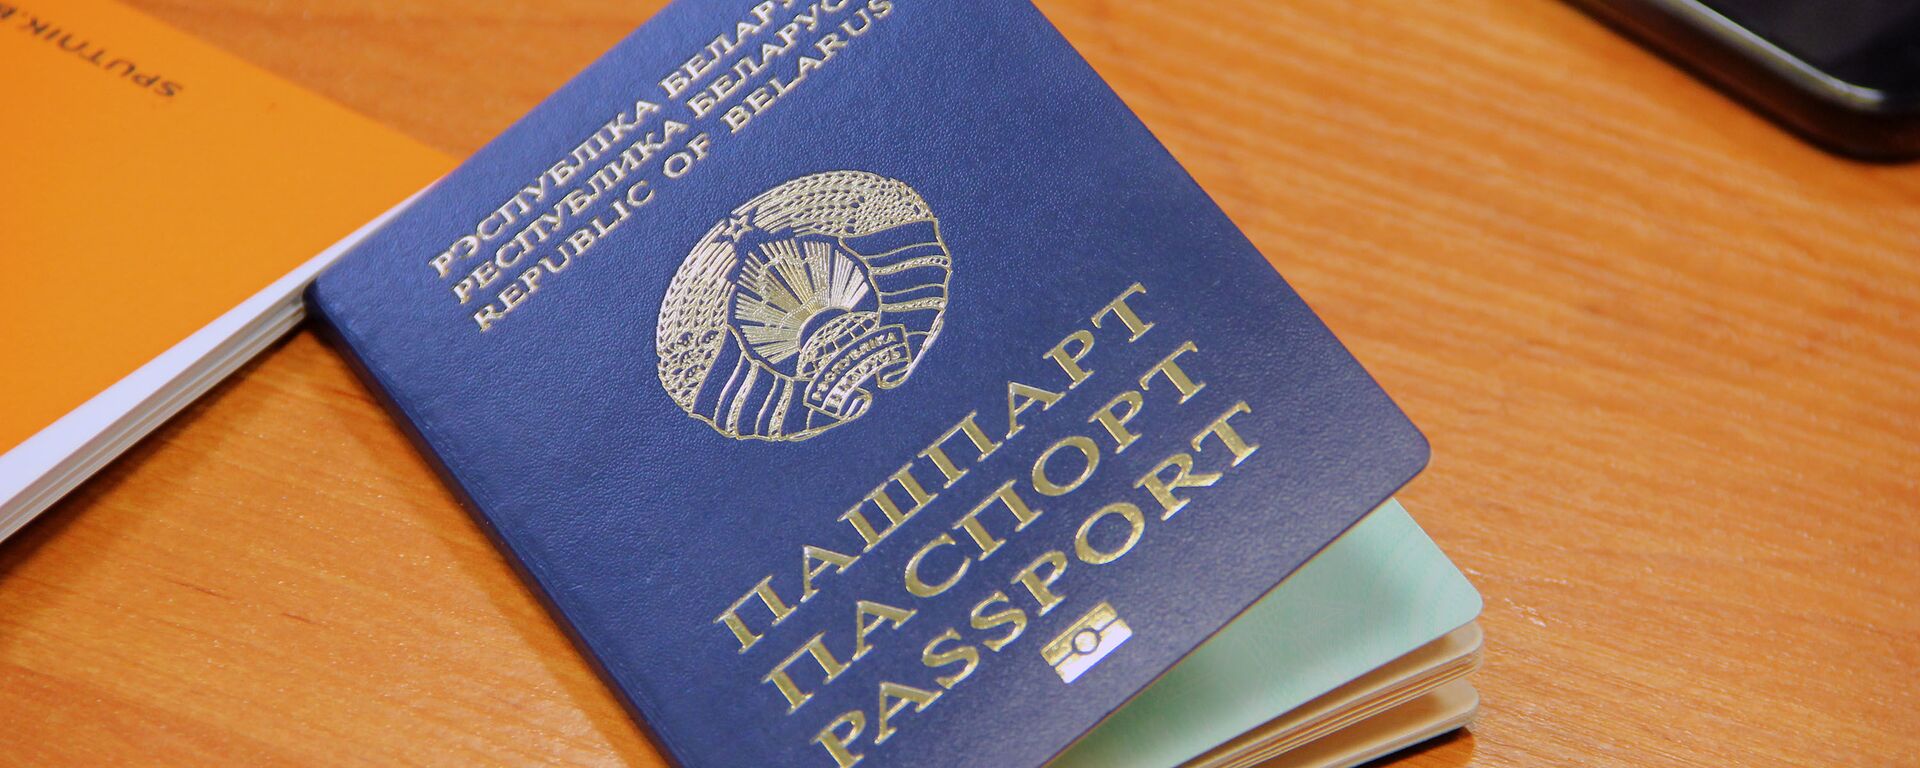 Биометрический паспорт предназначен для выезда за границу - Sputnik Беларусь, 1920, 06.01.2021